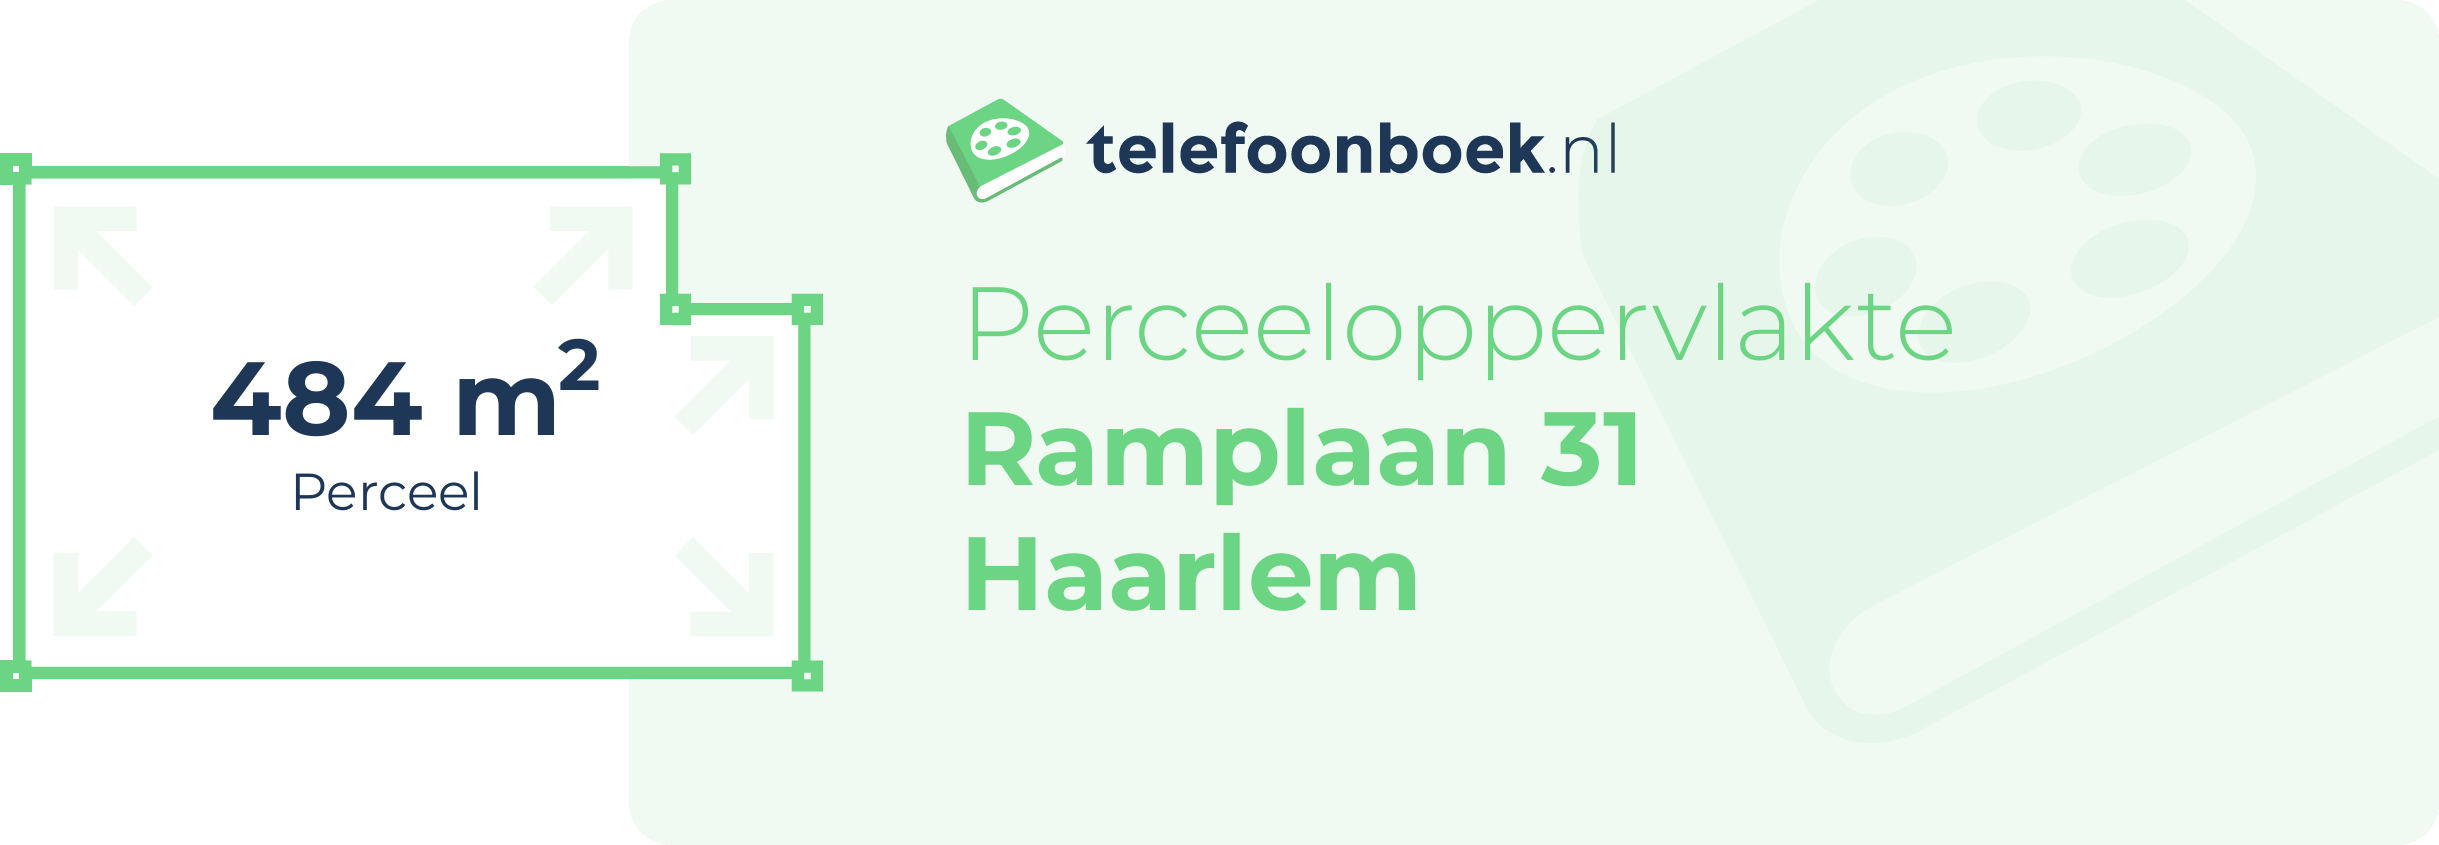 Perceeloppervlakte Ramplaan 31 Haarlem